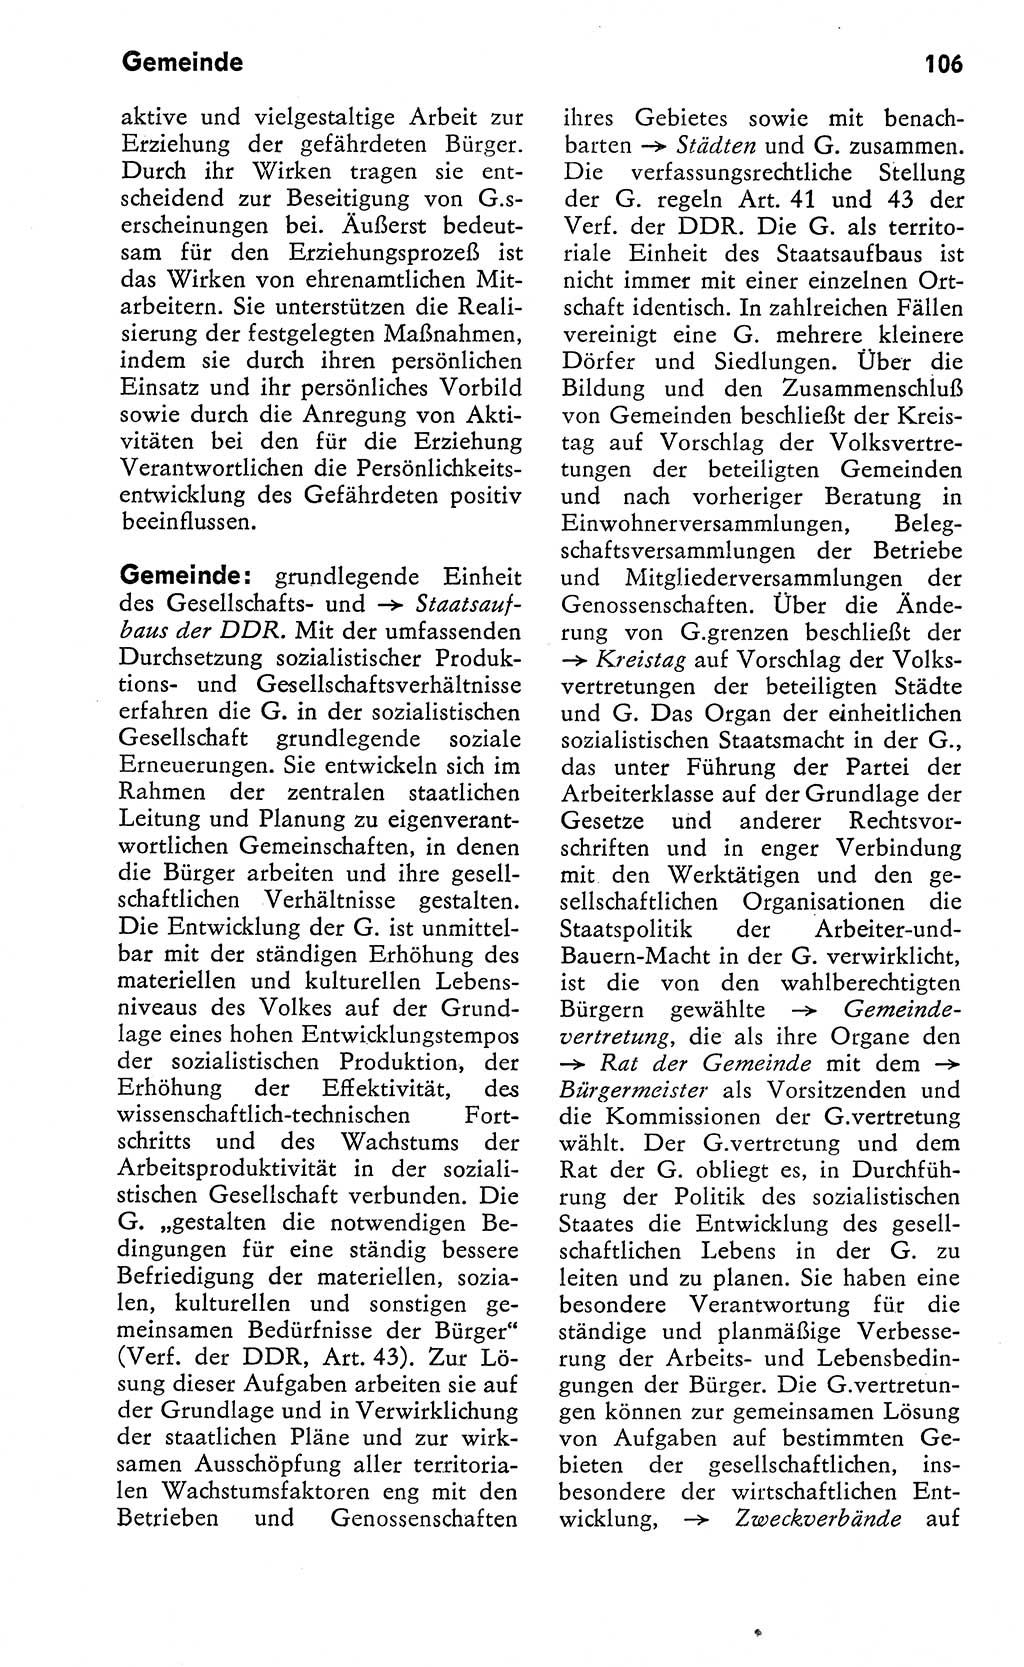 Wörterbuch zum sozialistischen Staat [Deutsche Demokratische Republik (DDR)] 1974, Seite 106 (Wb. soz. St. DDR 1974, S. 106)